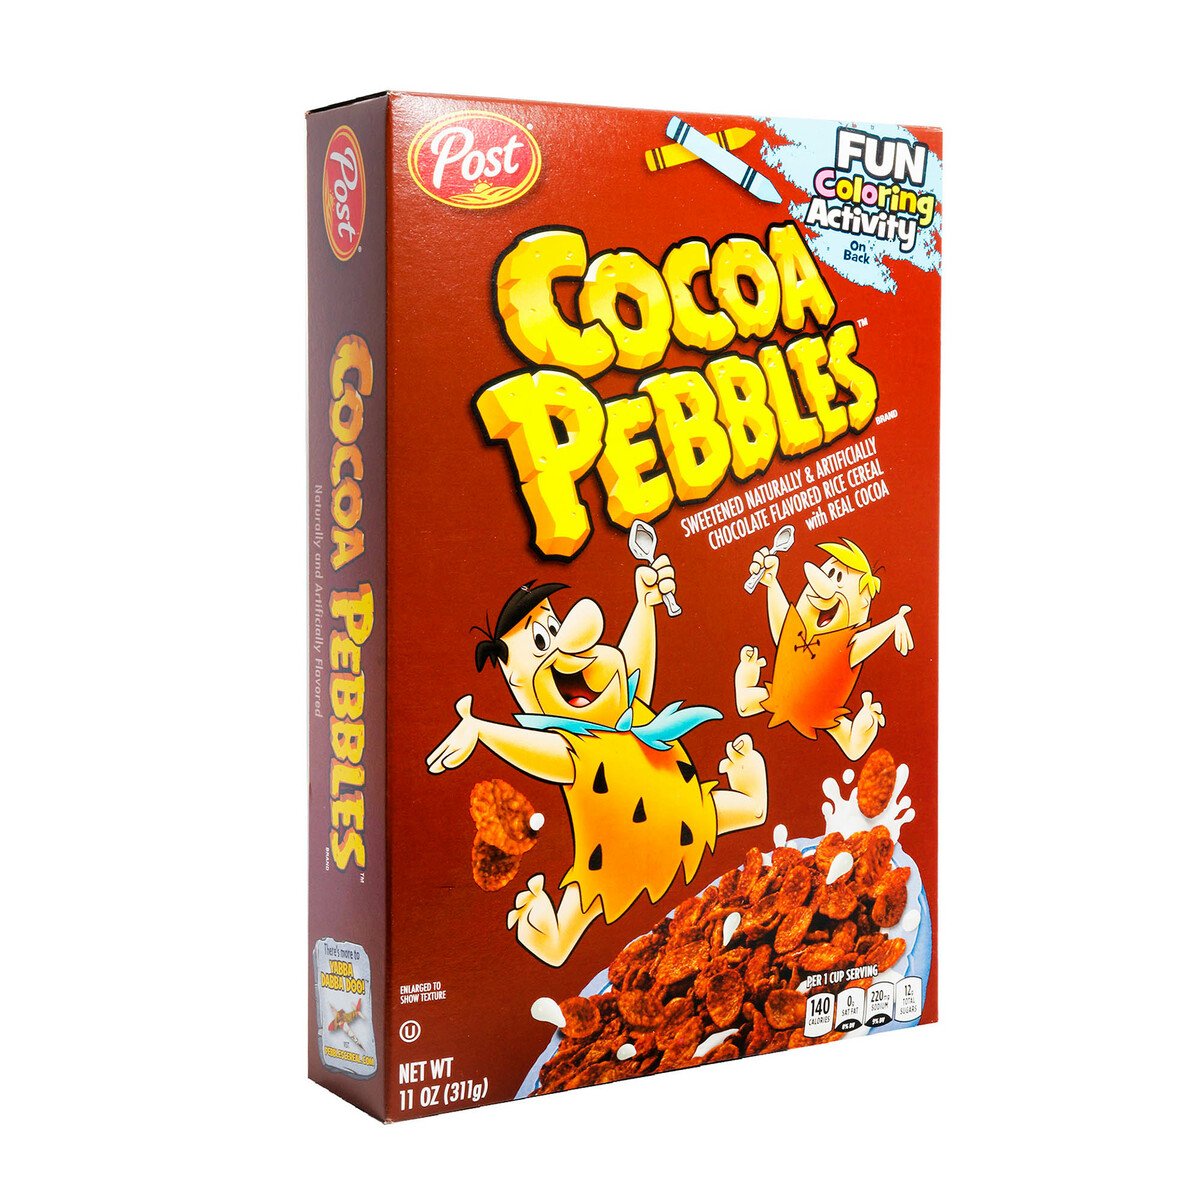 Post Cocoa Pebbles 311 g